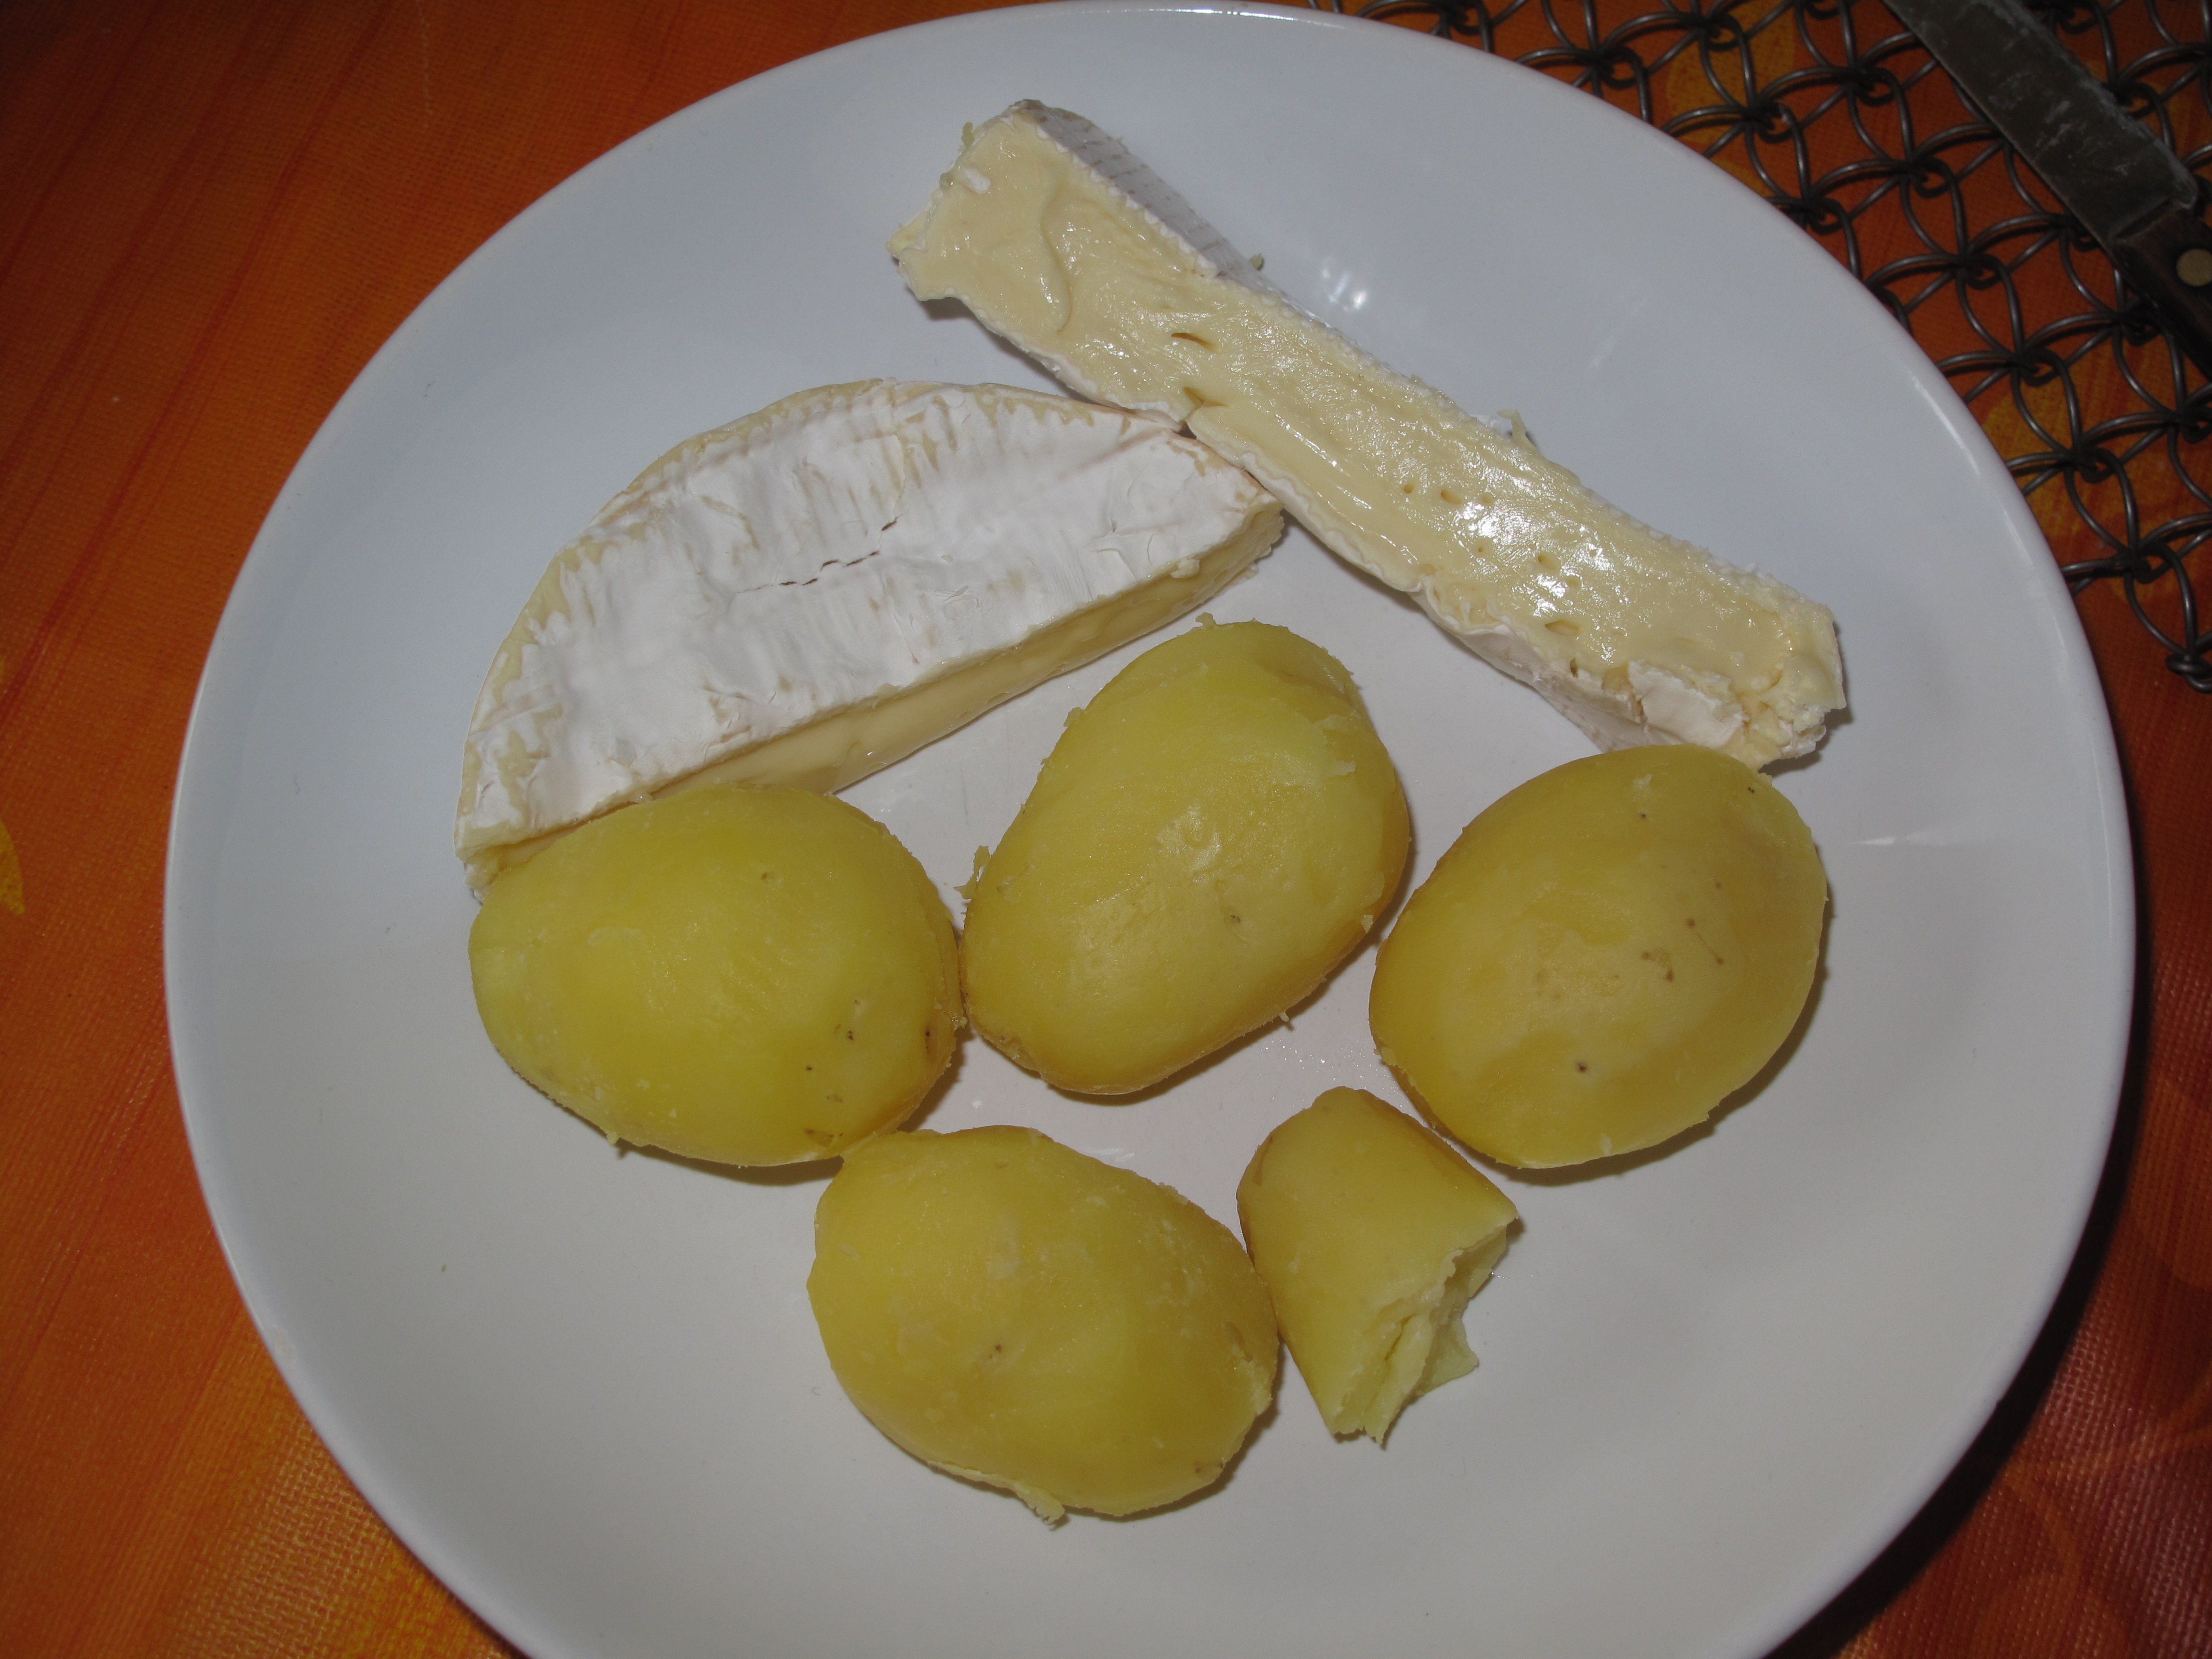 Brambory se sýrem hermelínového typu